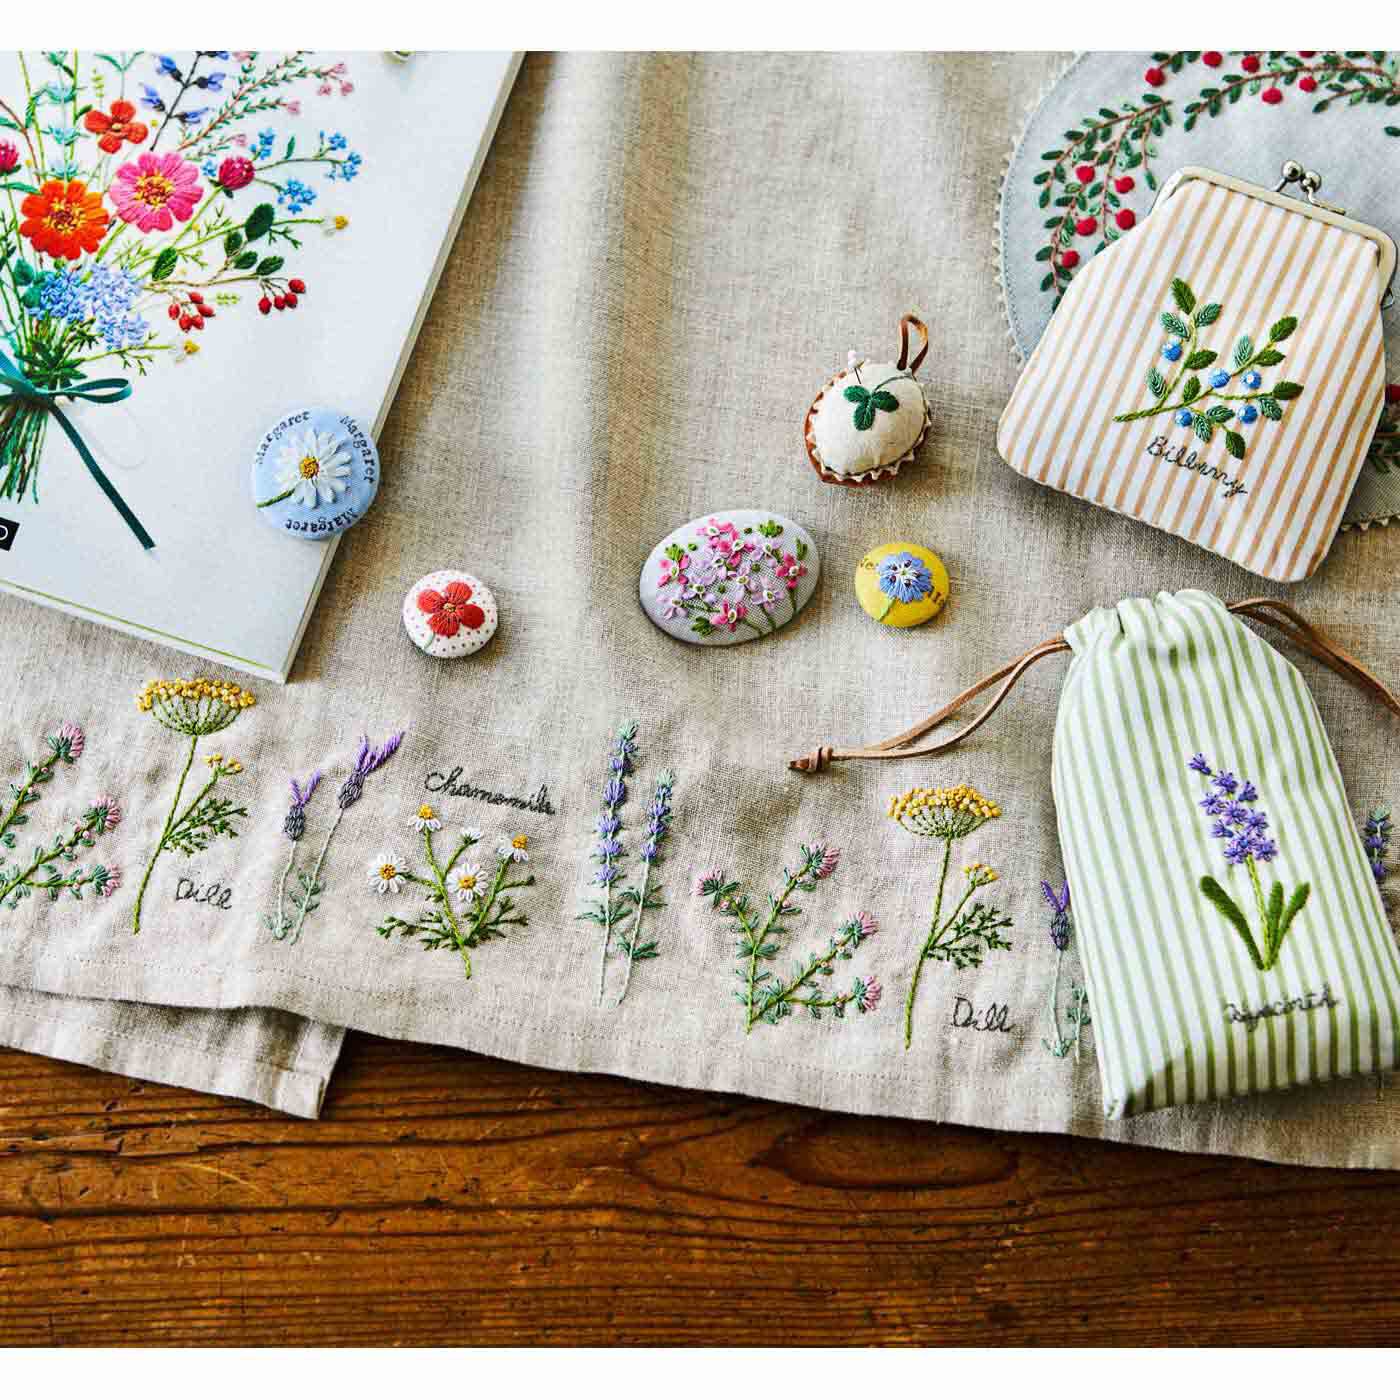 Couturier|季節のお花で暮らしに彩りを 187の刺繍デザイン 青木 和子さんのお庭から